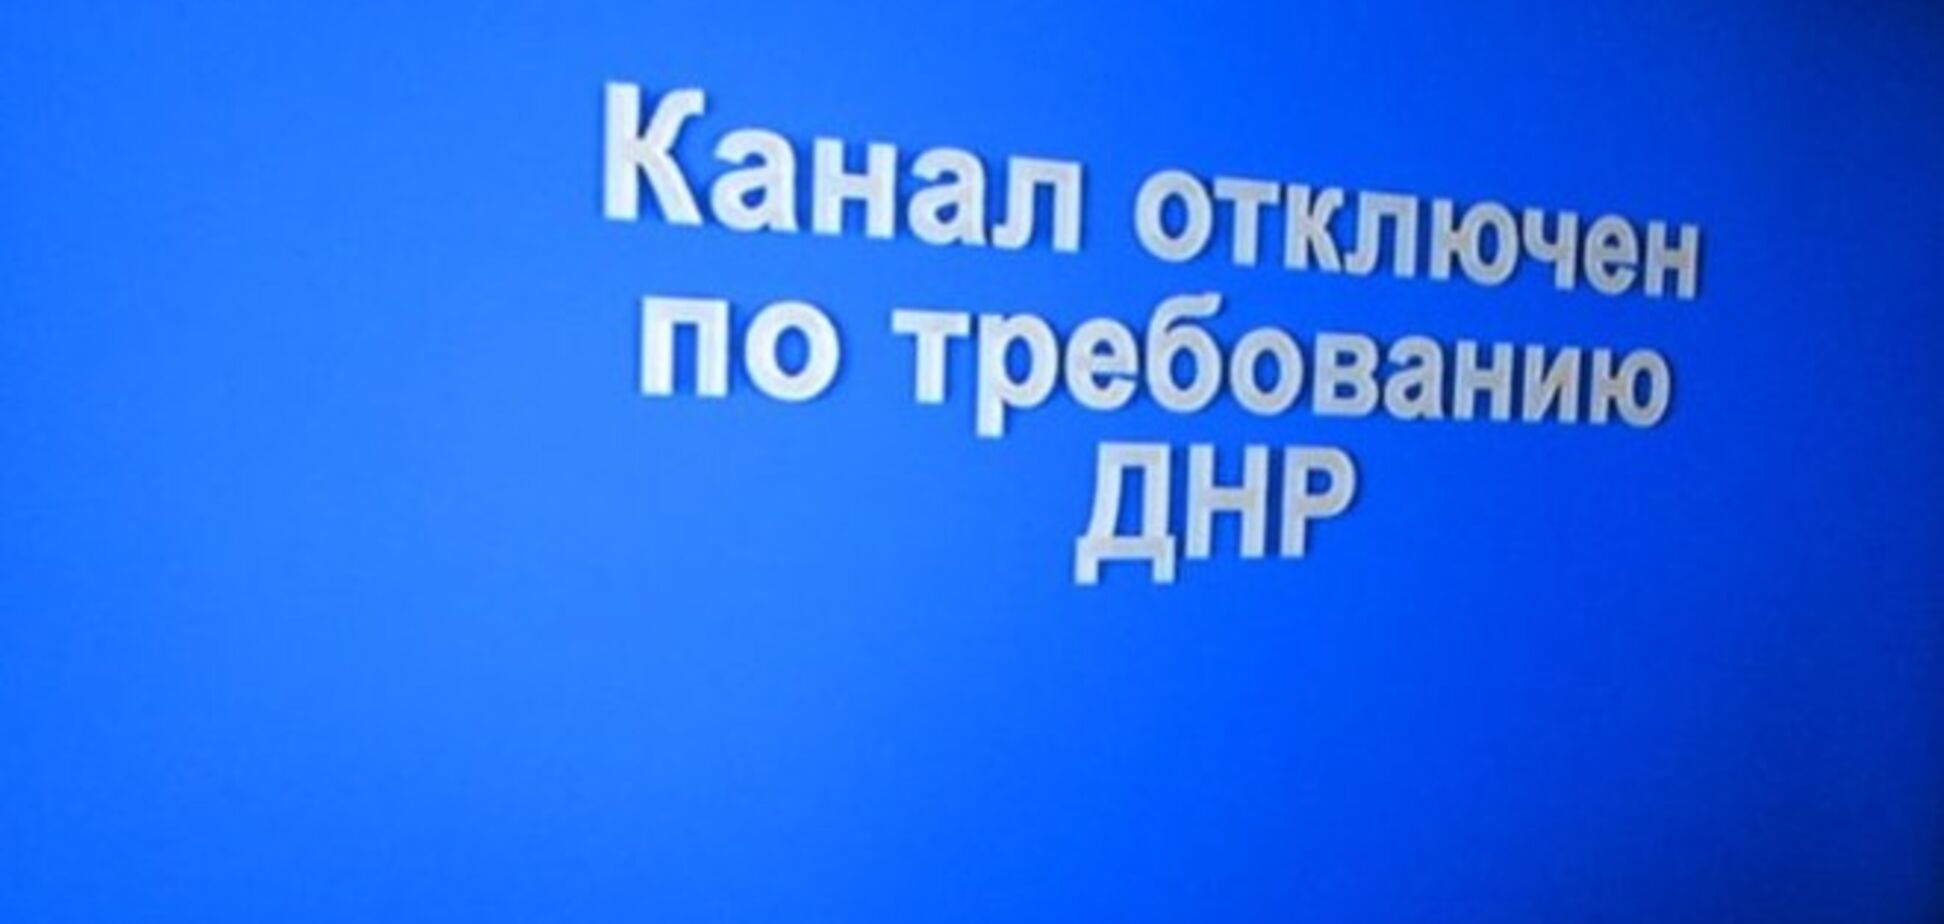 Украинские телеканалы в Донецке отключены 'по требованию ДНР'